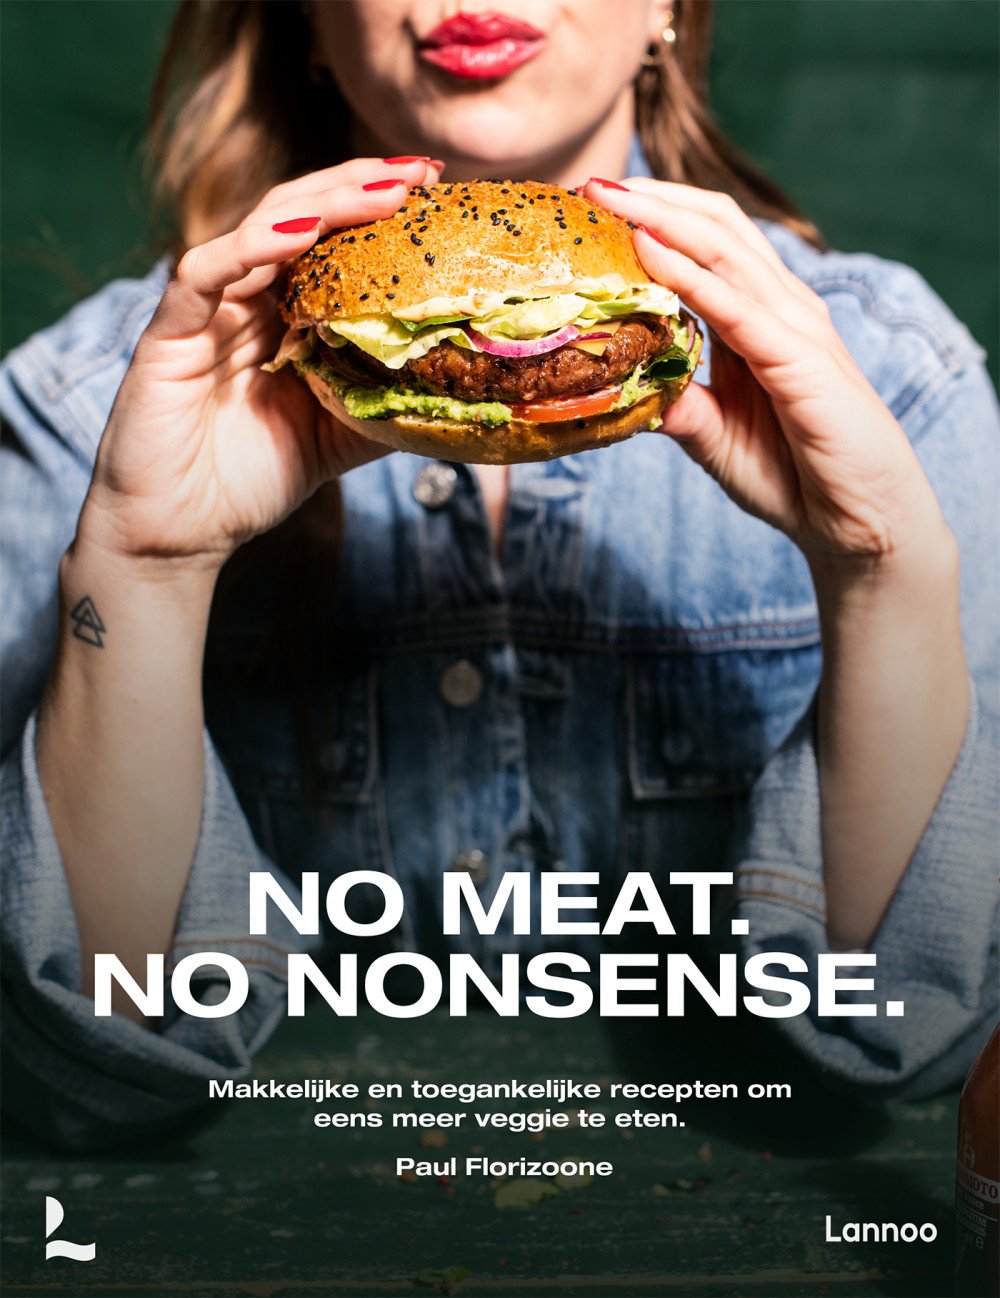 No meat, no nonsense